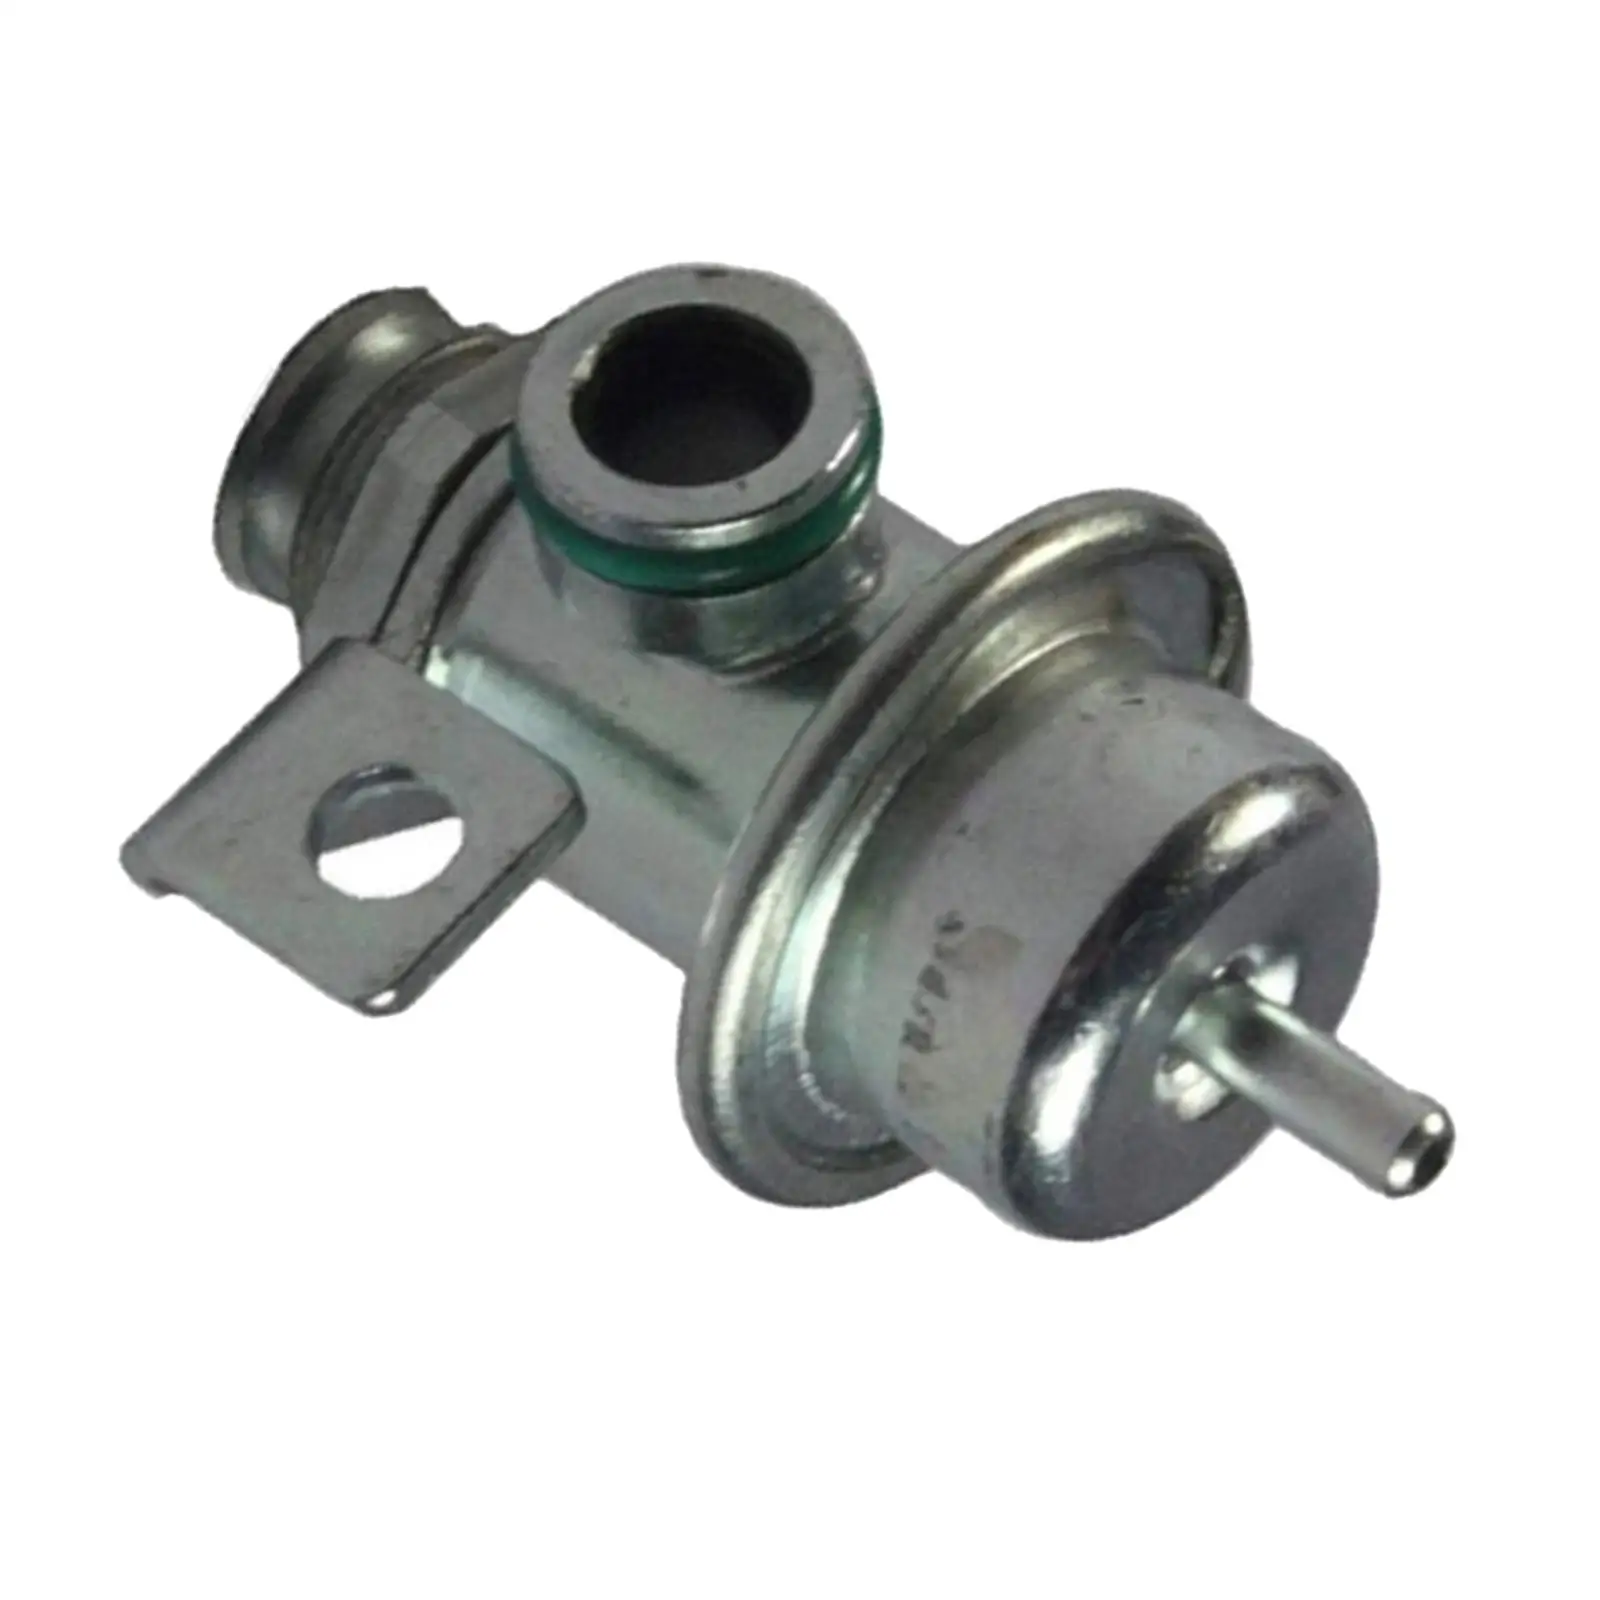 1711362 Pressure Regulator , Car Supplies Metal Moulding Replacement 000 ,11